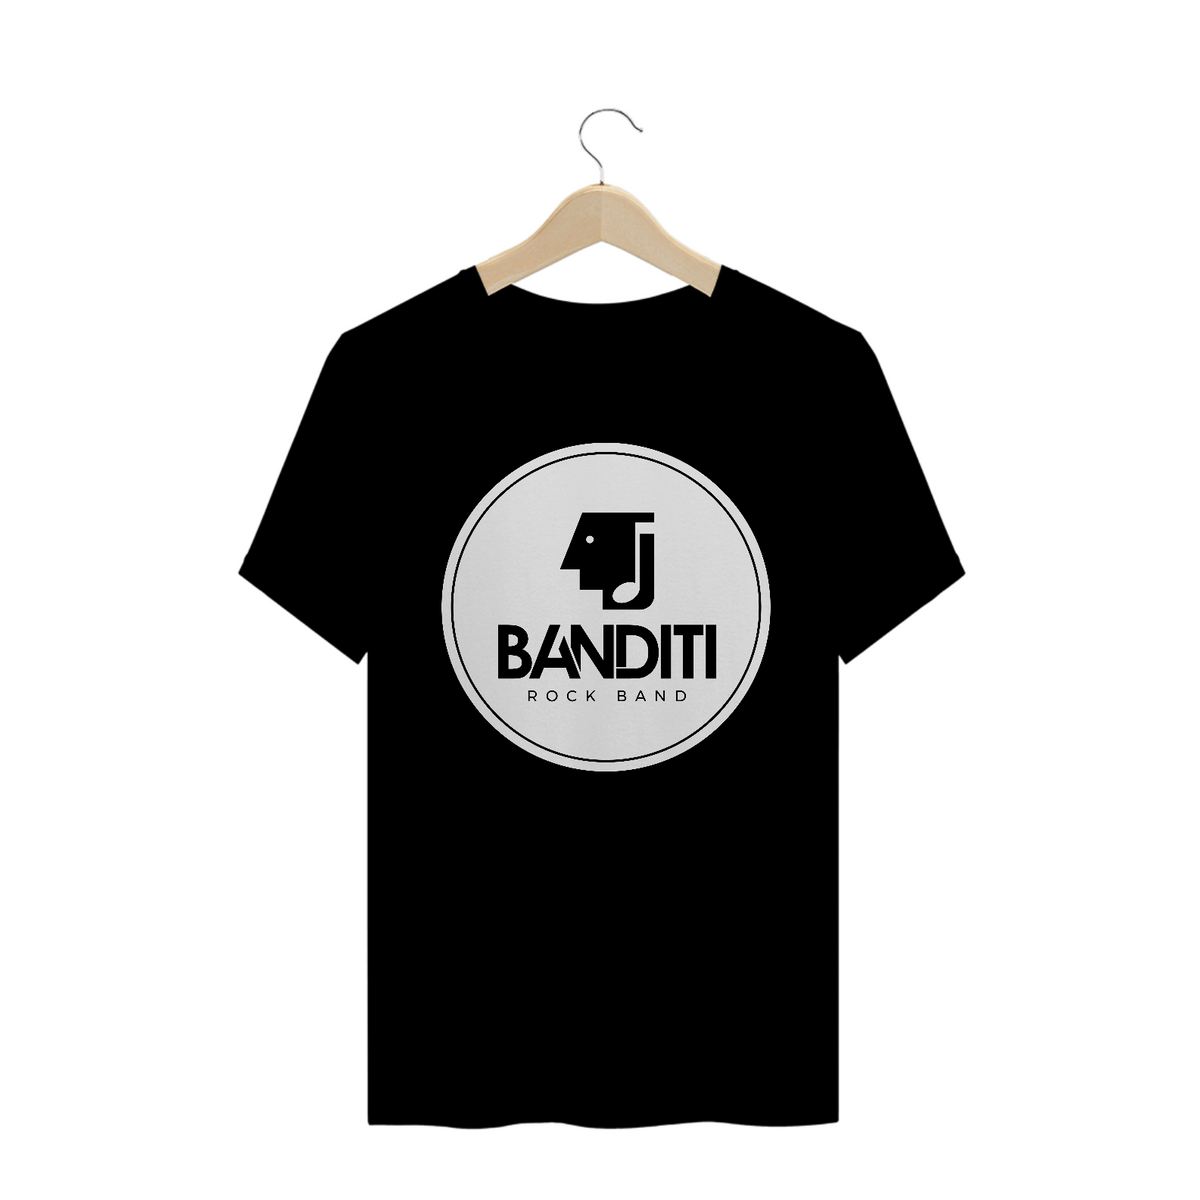 Nome do produto: Camiseta - Banditi Rock Band